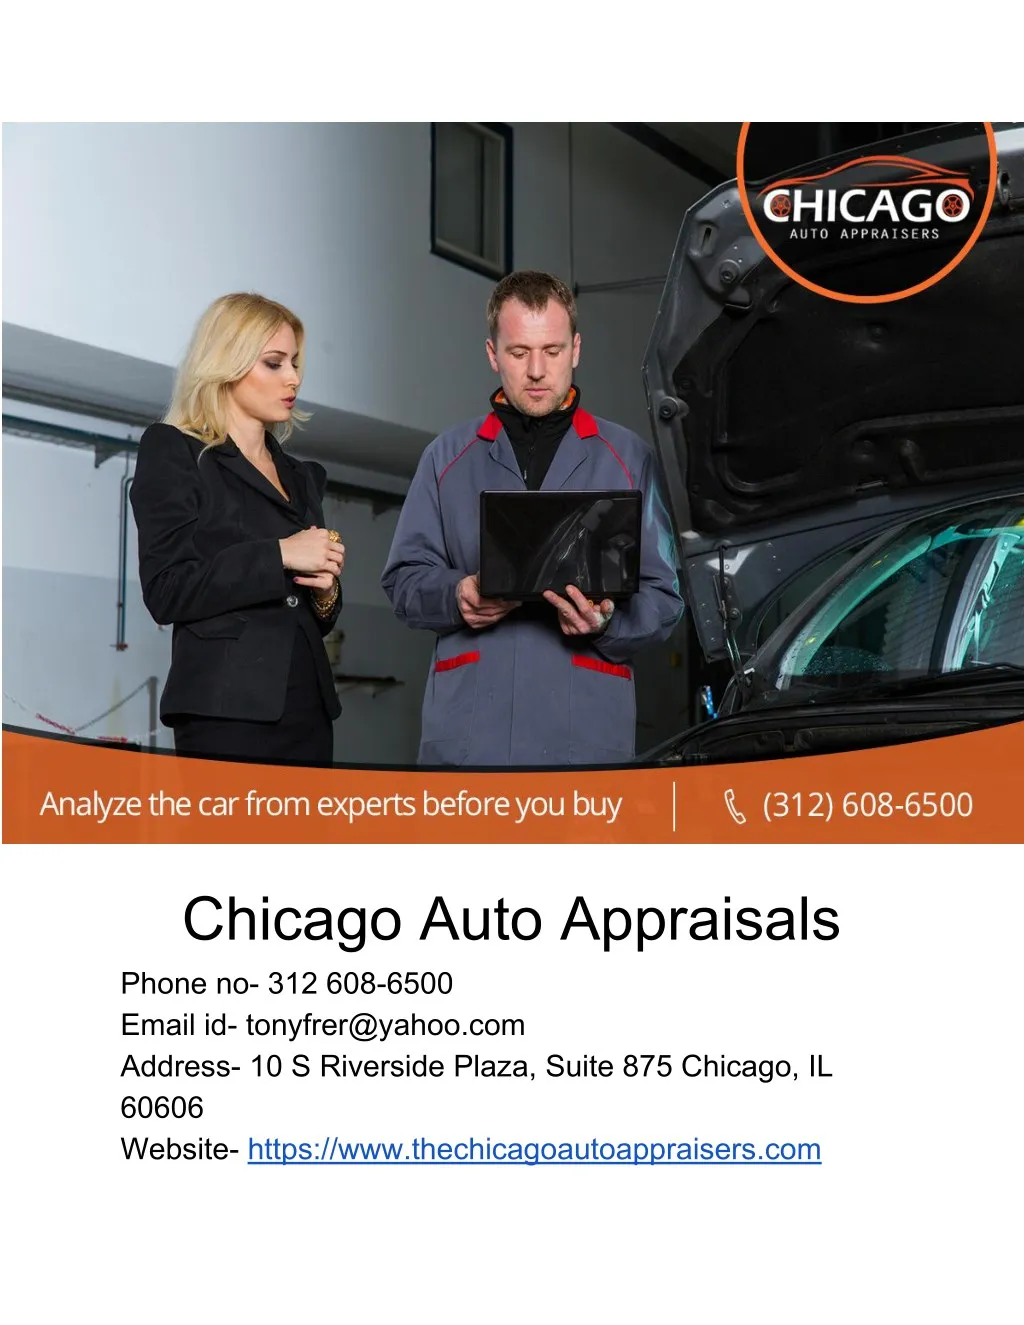 chicago auto appraisals phone no 312 608 6500